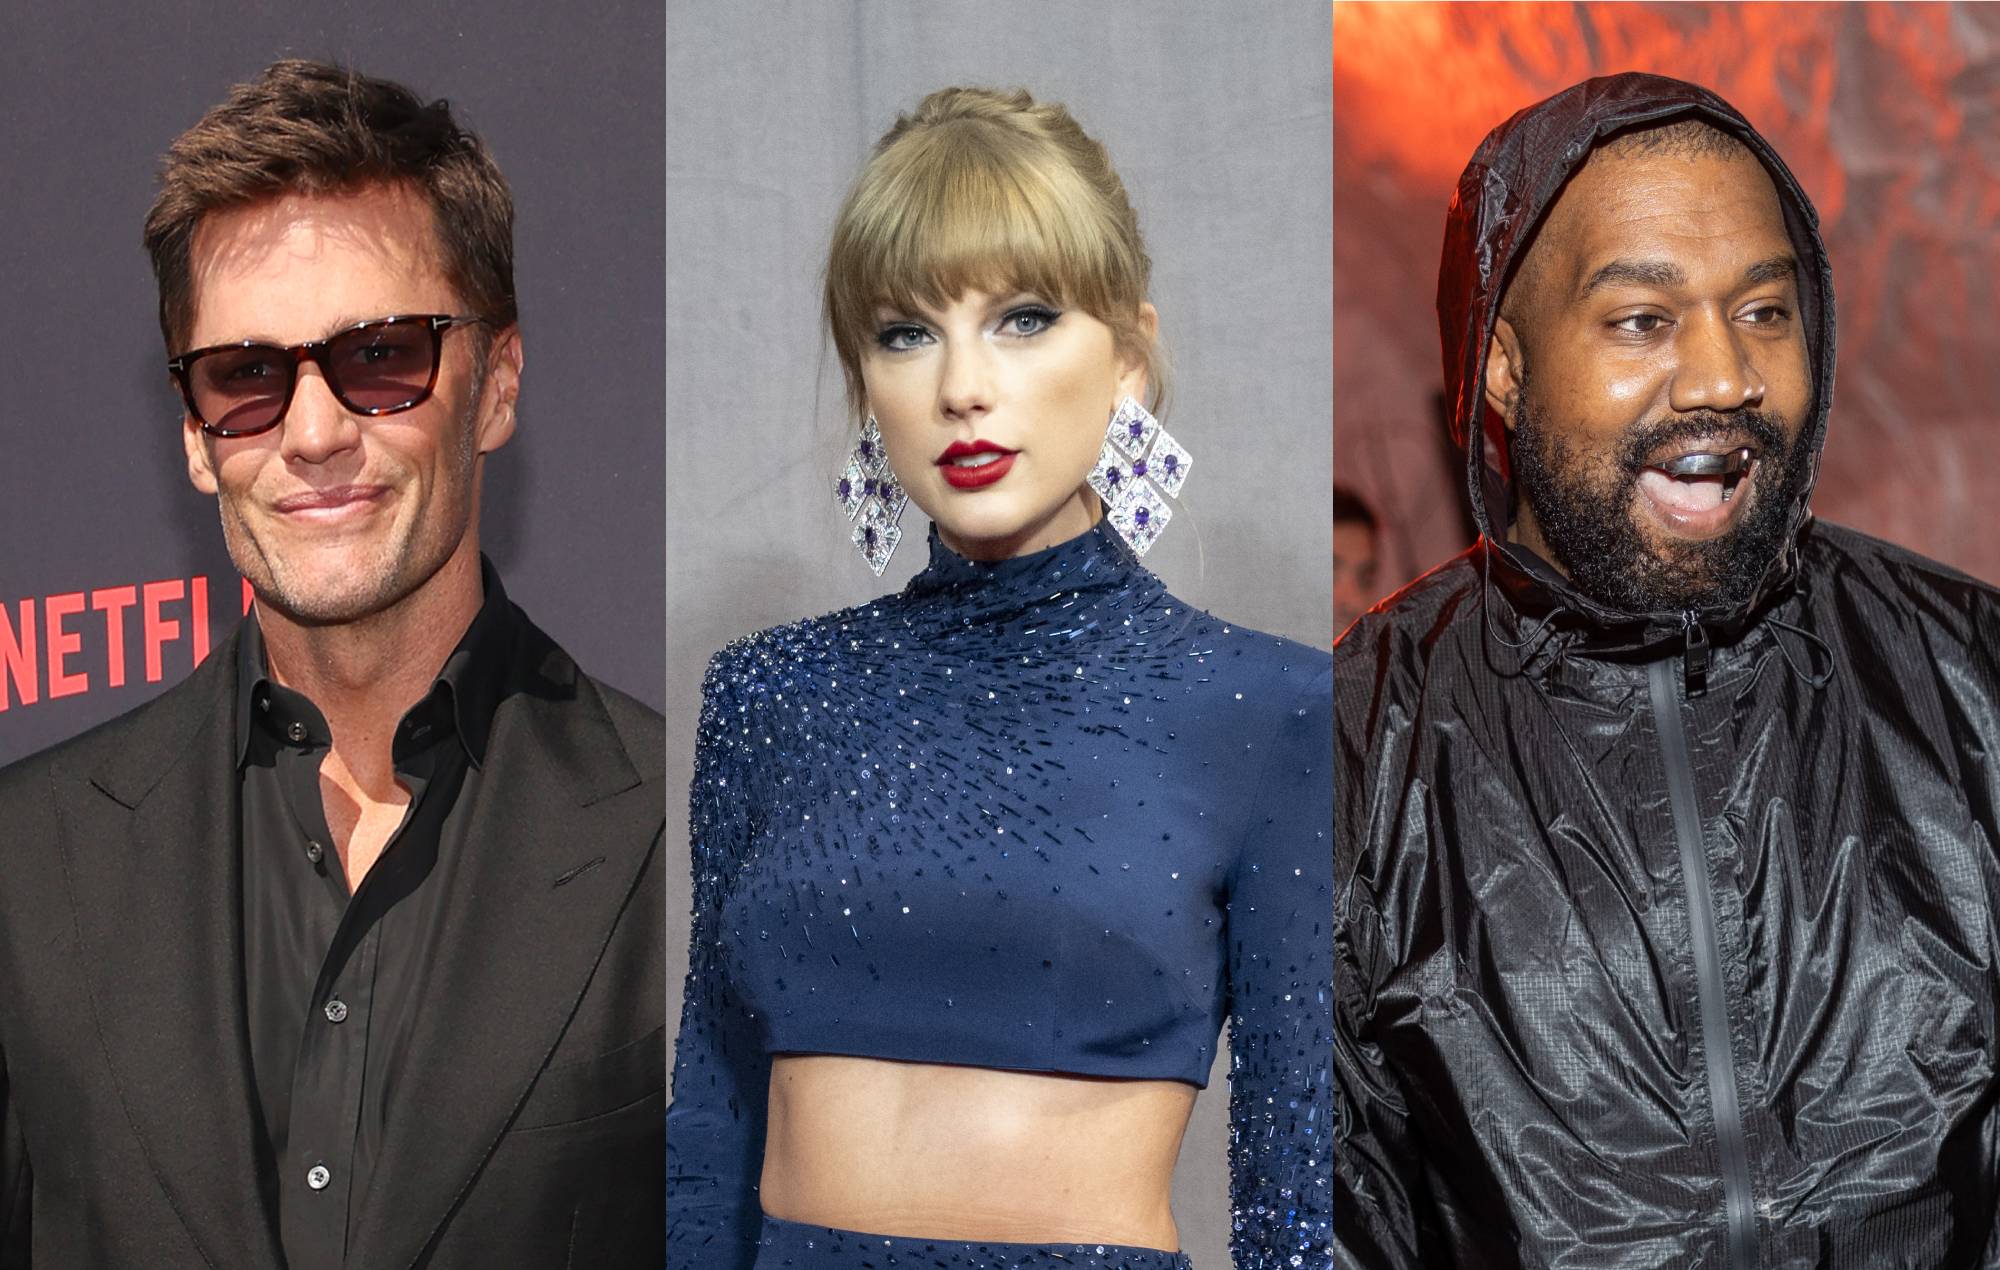 Tom Brady, Taylor Swift and Kanye West